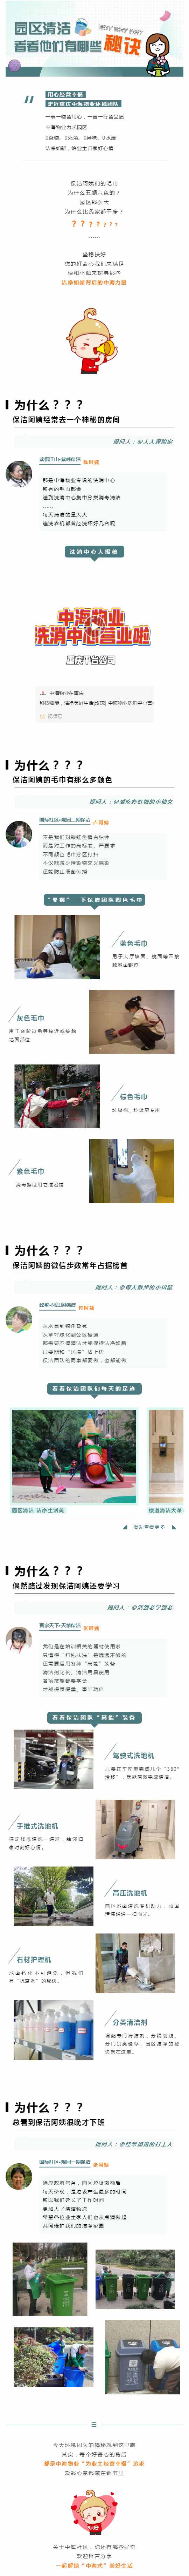 环境篇丨那些藏在重庆中海社区里的秘密_壹伴长图1.jpg